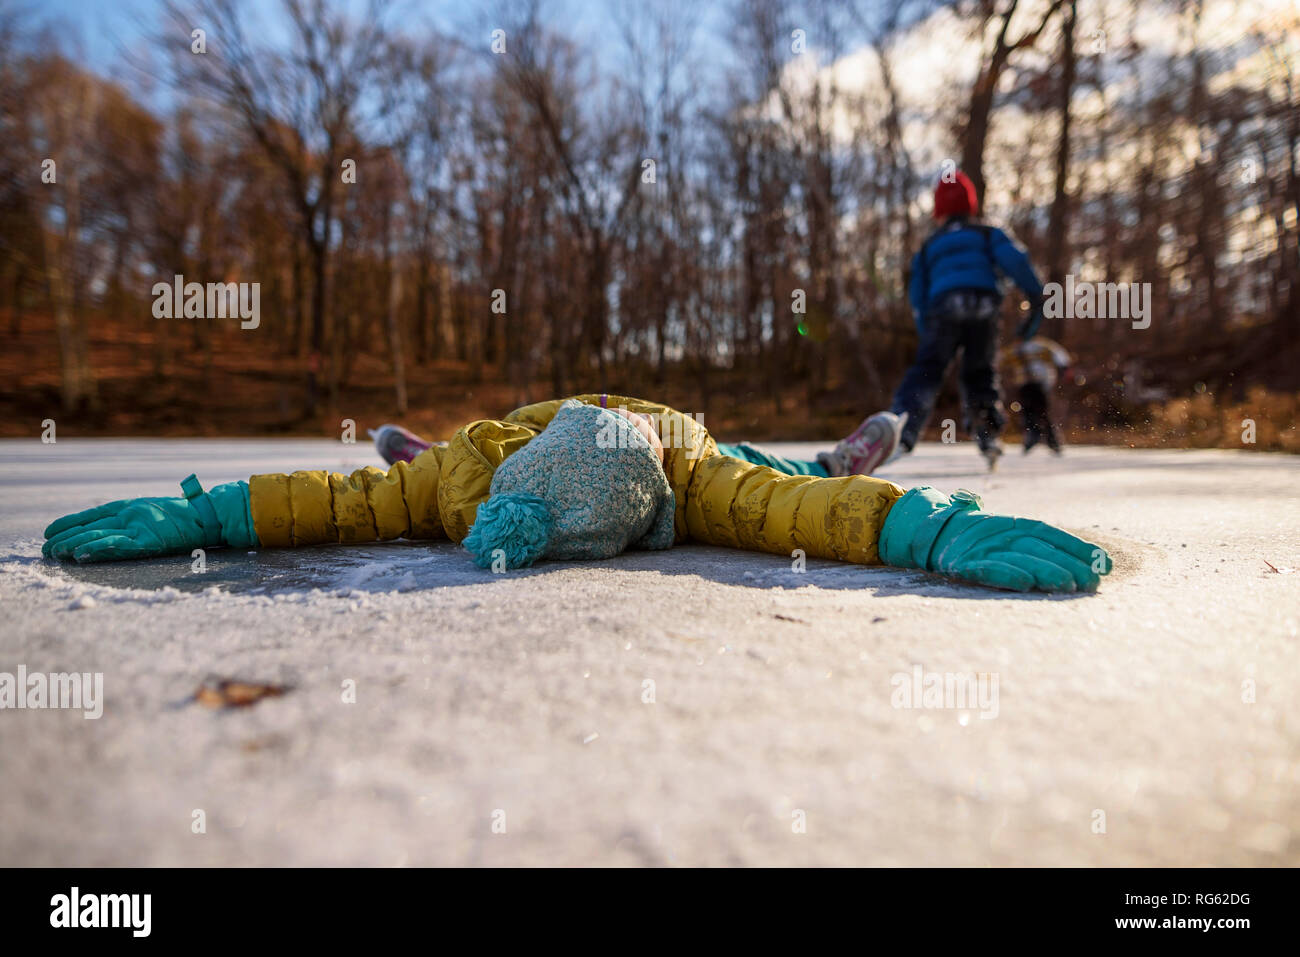 Fille couchée sur un étang gelé avec ses bras tendus et deux personnes, le patin à glace à l'arrière-plan, United States Banque D'Images